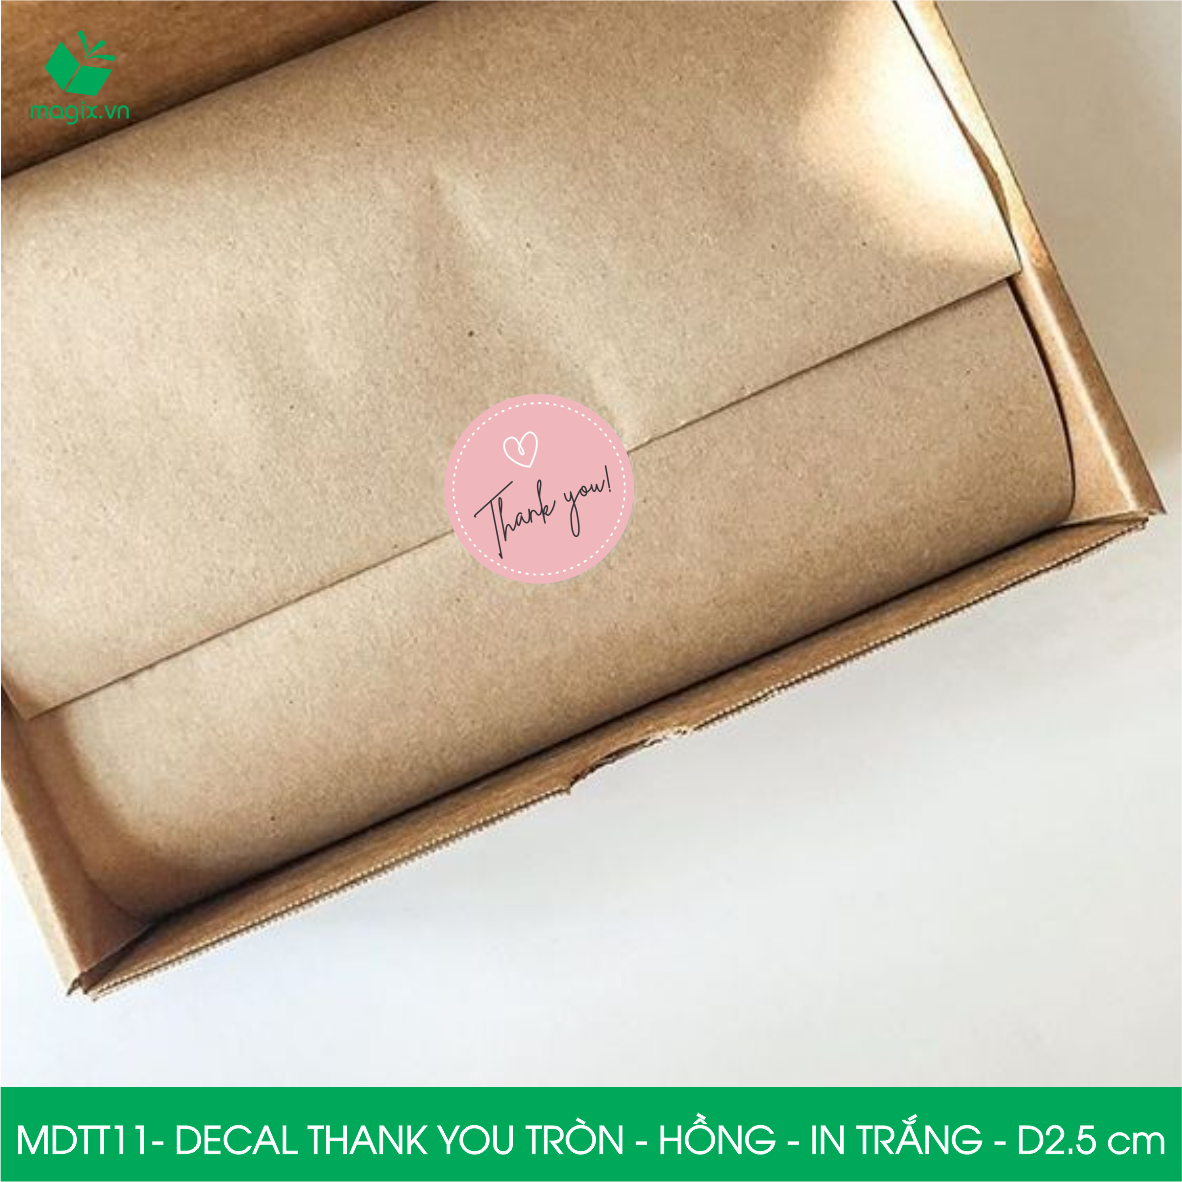 MDTT11 - D2.5cm - 500 Sticker Thank you, decal Thank you tròn dán hộp carton, tem cám ơn, nhãn dán cảm ơn trang trí gói hàng